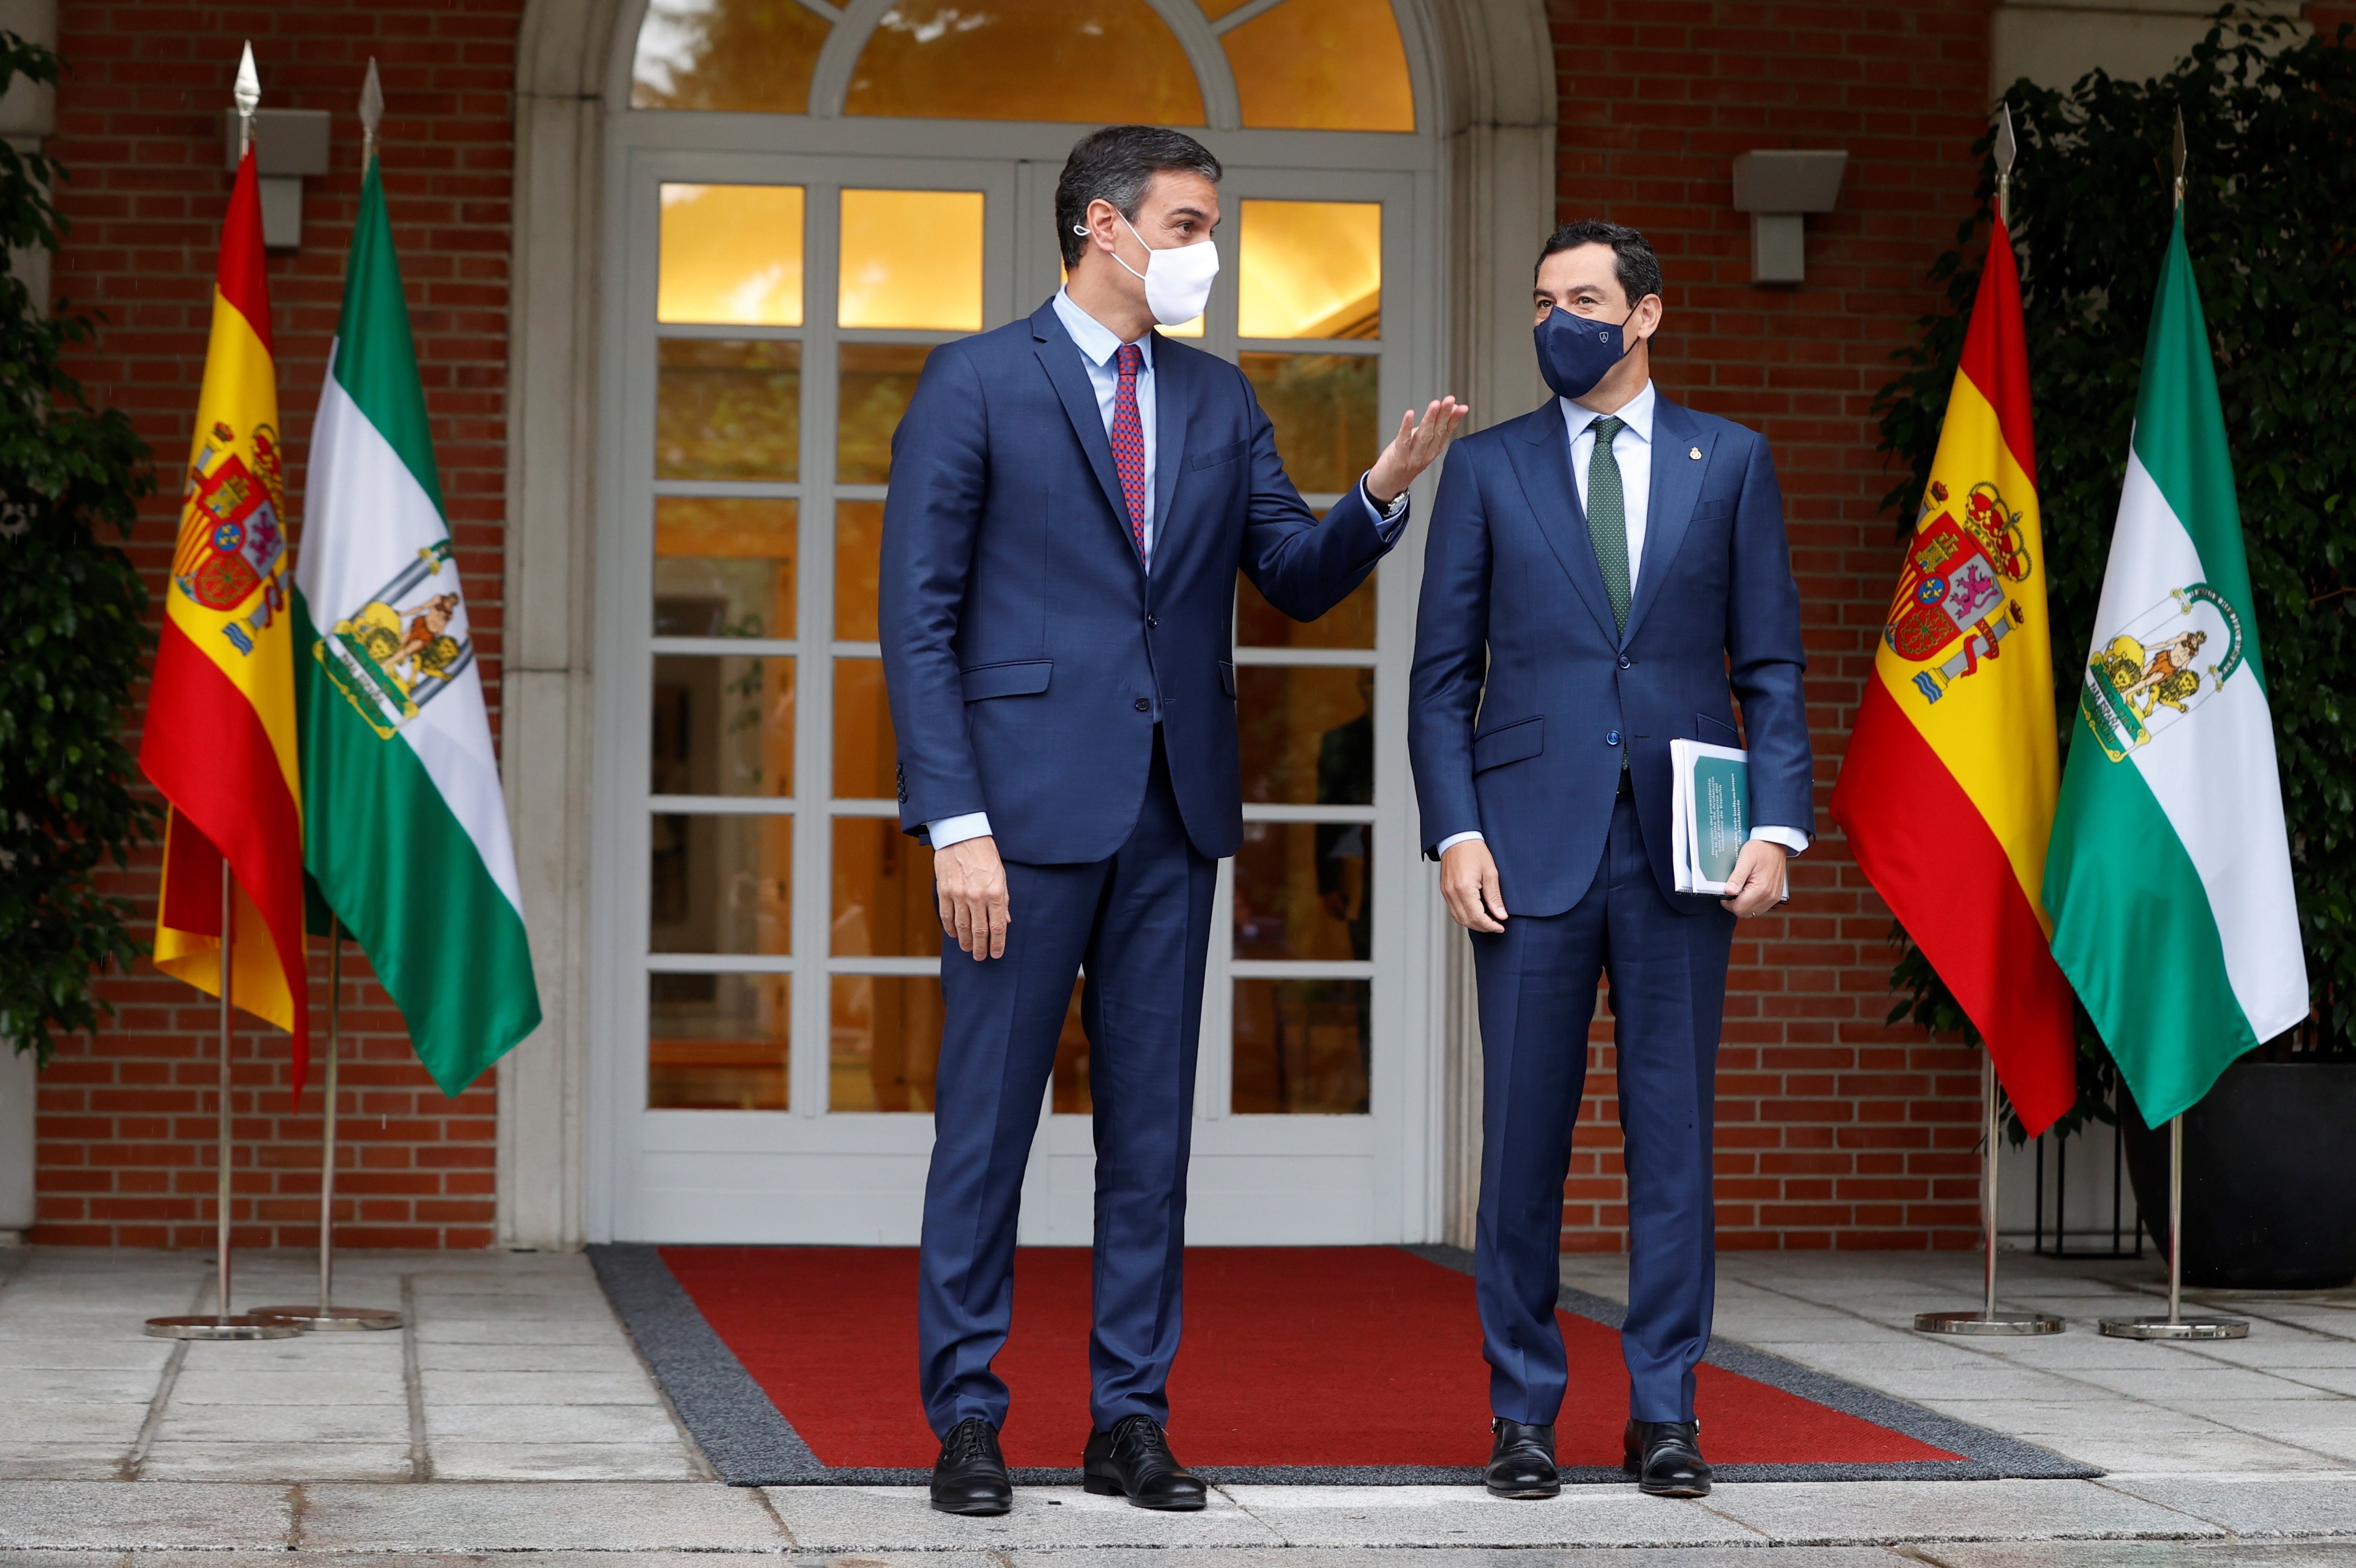 El president andalús també demana a Sánchez una taula de diàleg